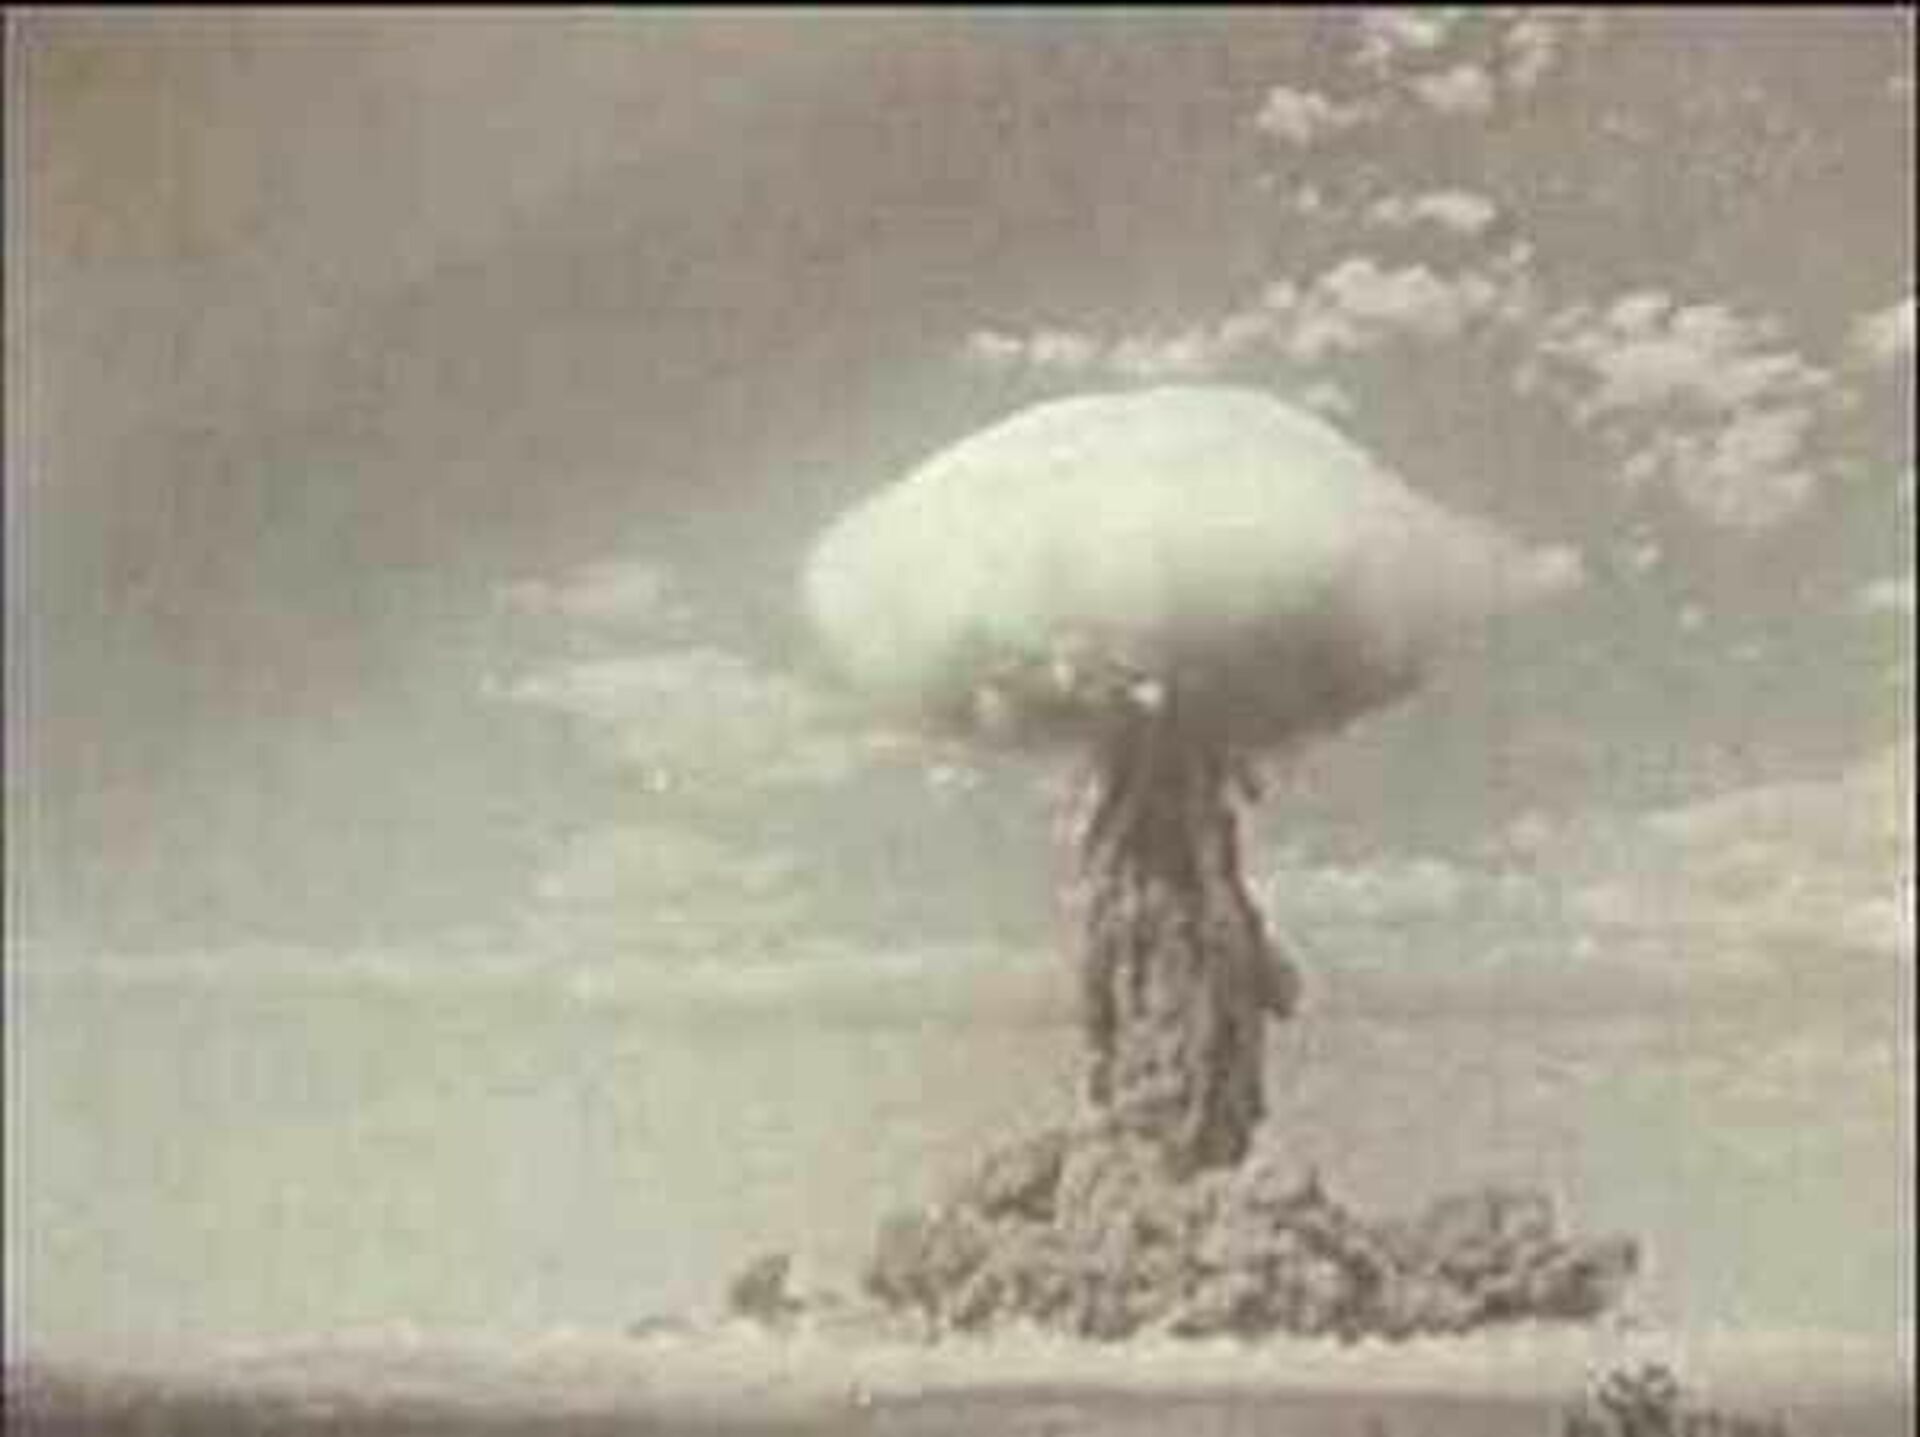 Тоцкий ядерный взрыв. Тоцкий полигон 1954 год ядерные испытания. Ядерный взрыв на Тоцком полигоне. Атомный взрыв 1954 Тоцкое. Ядерные учения на Тоцком полигоне 1954 года.